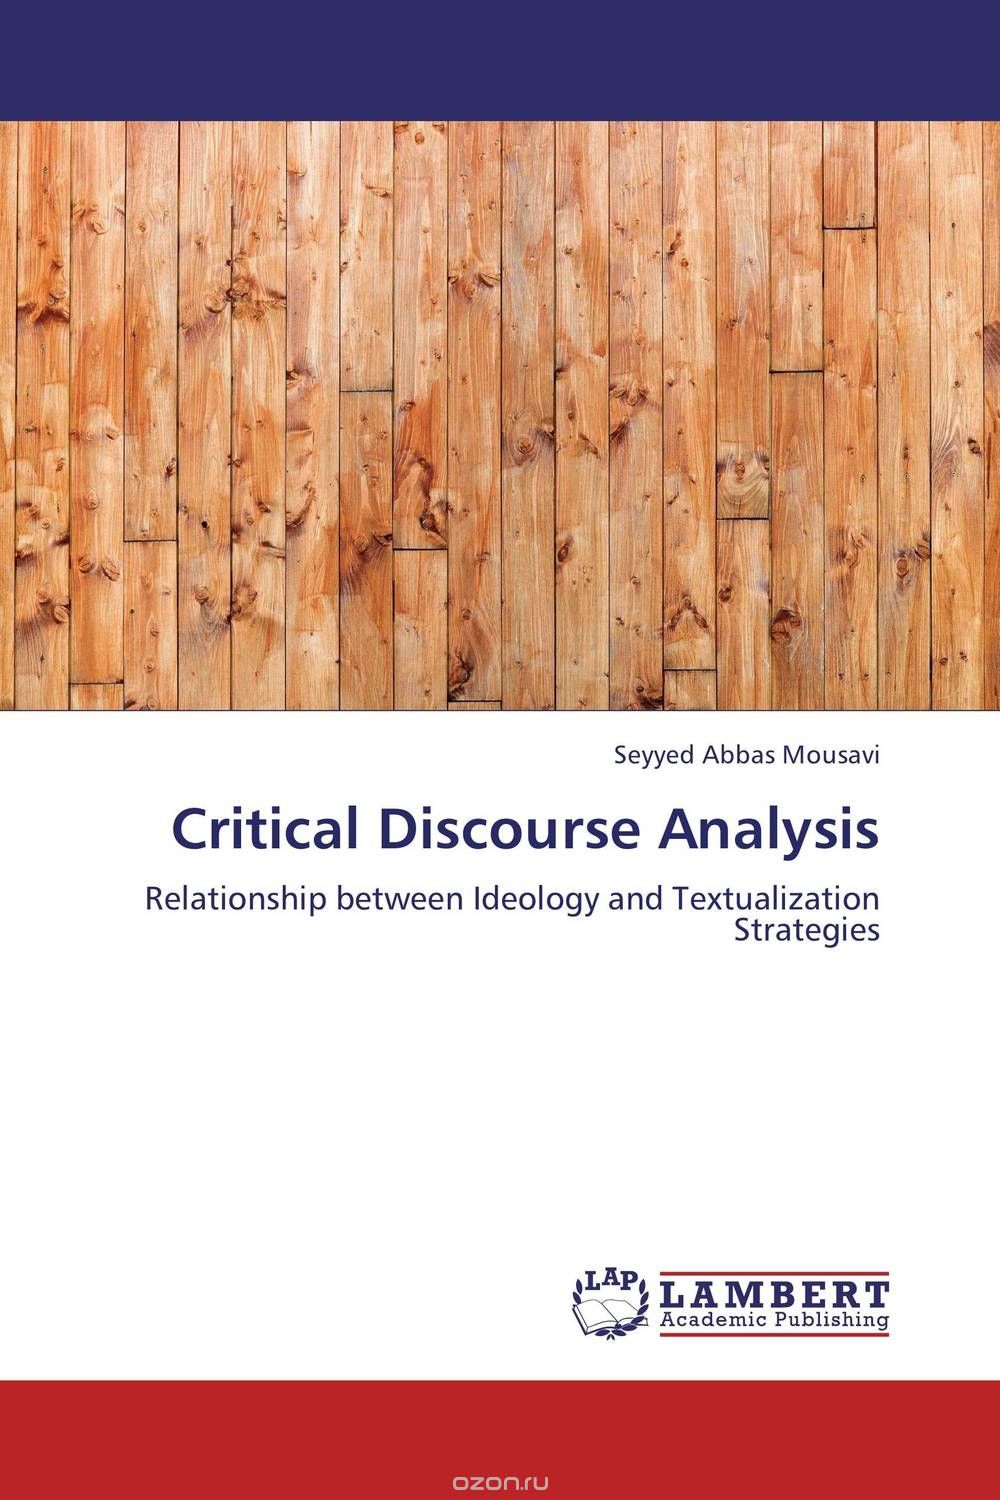 Скачать книгу "Critical Discourse Analysis"